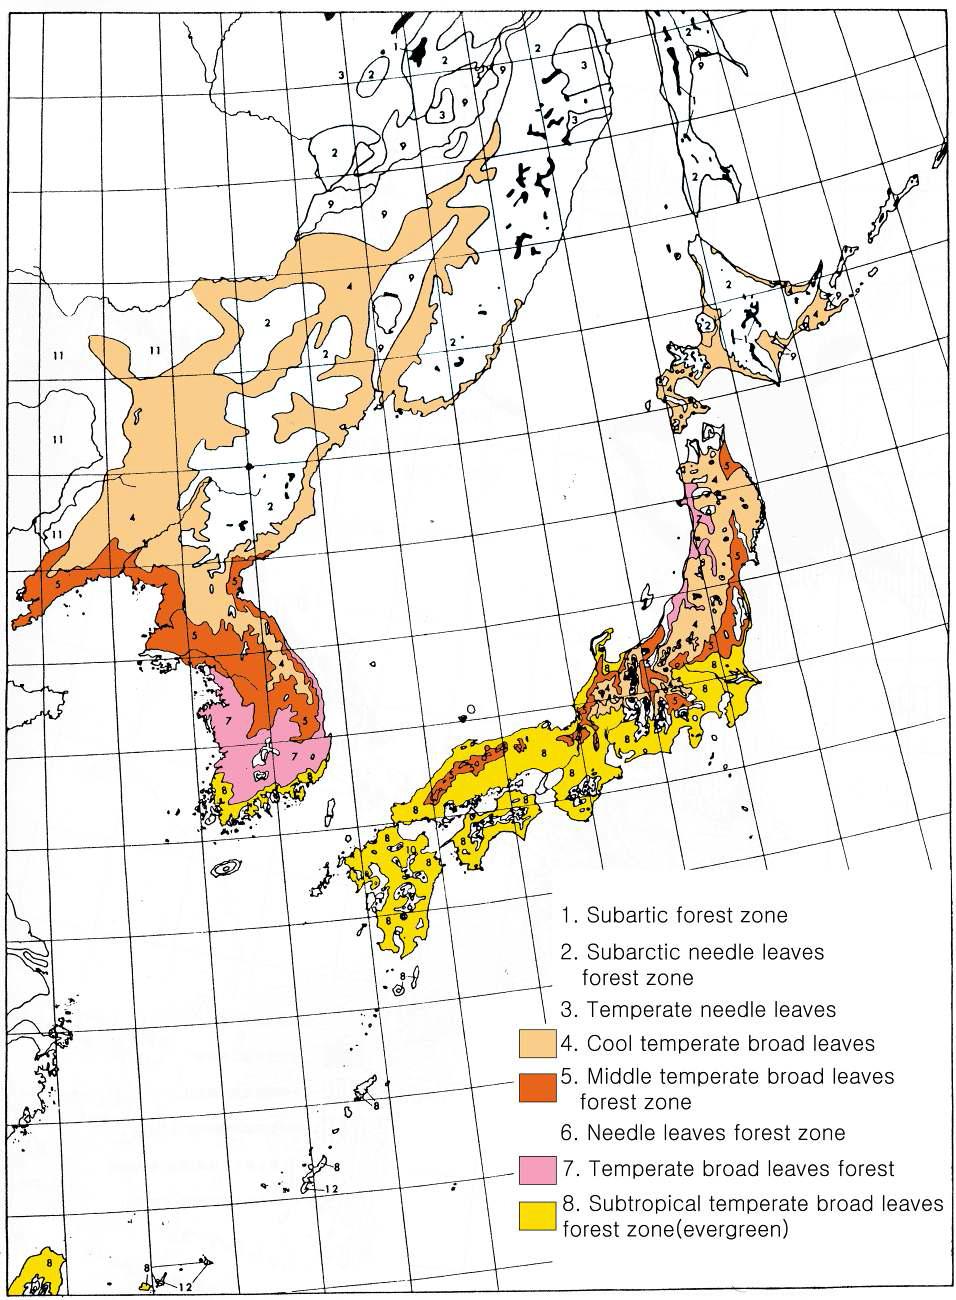 한반도와 일본의 현재 식생분포(那須, 1980)